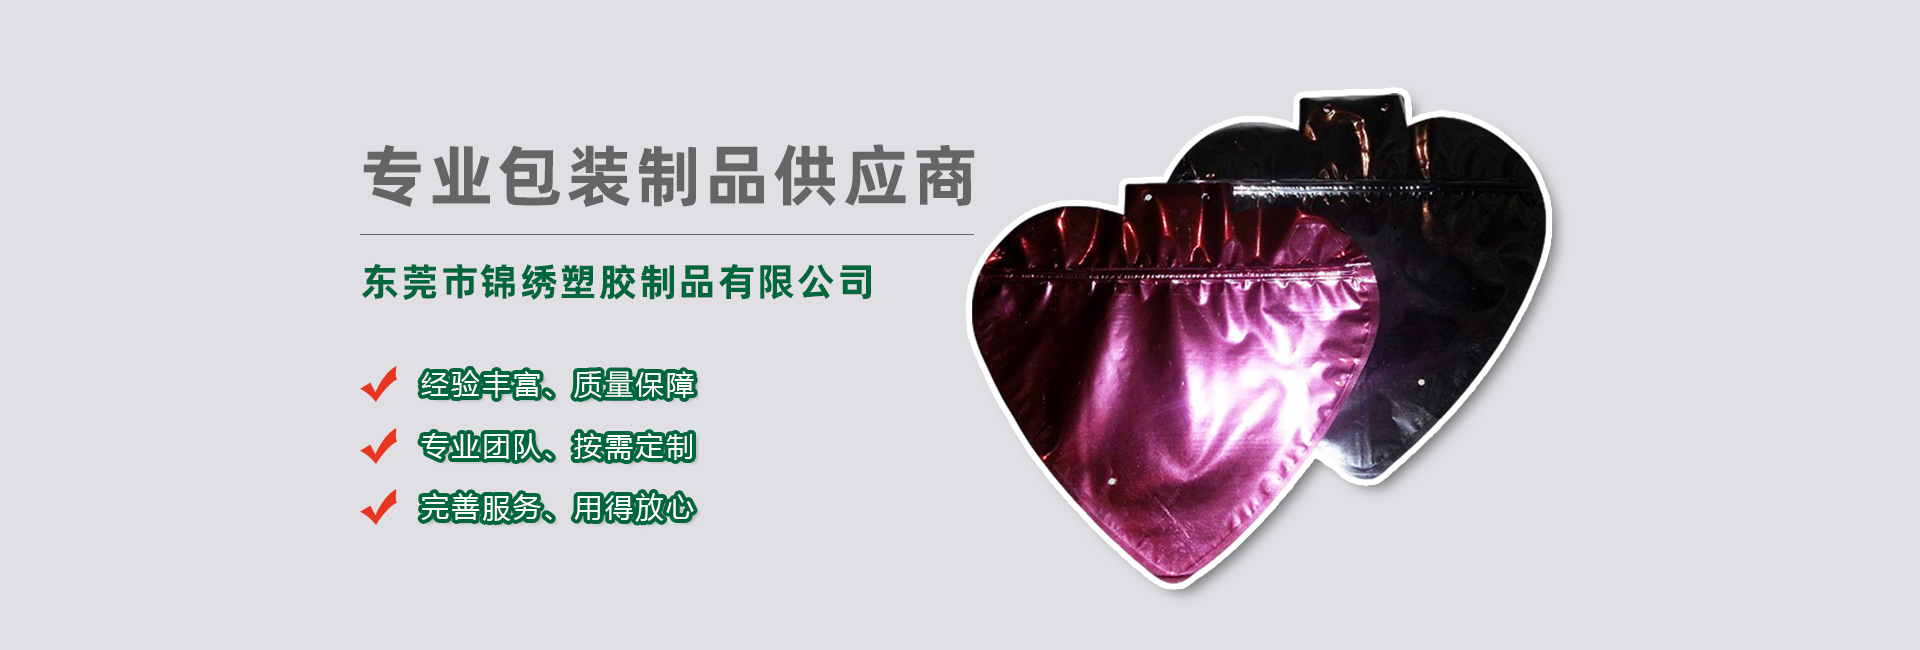 台湾食品袋banner